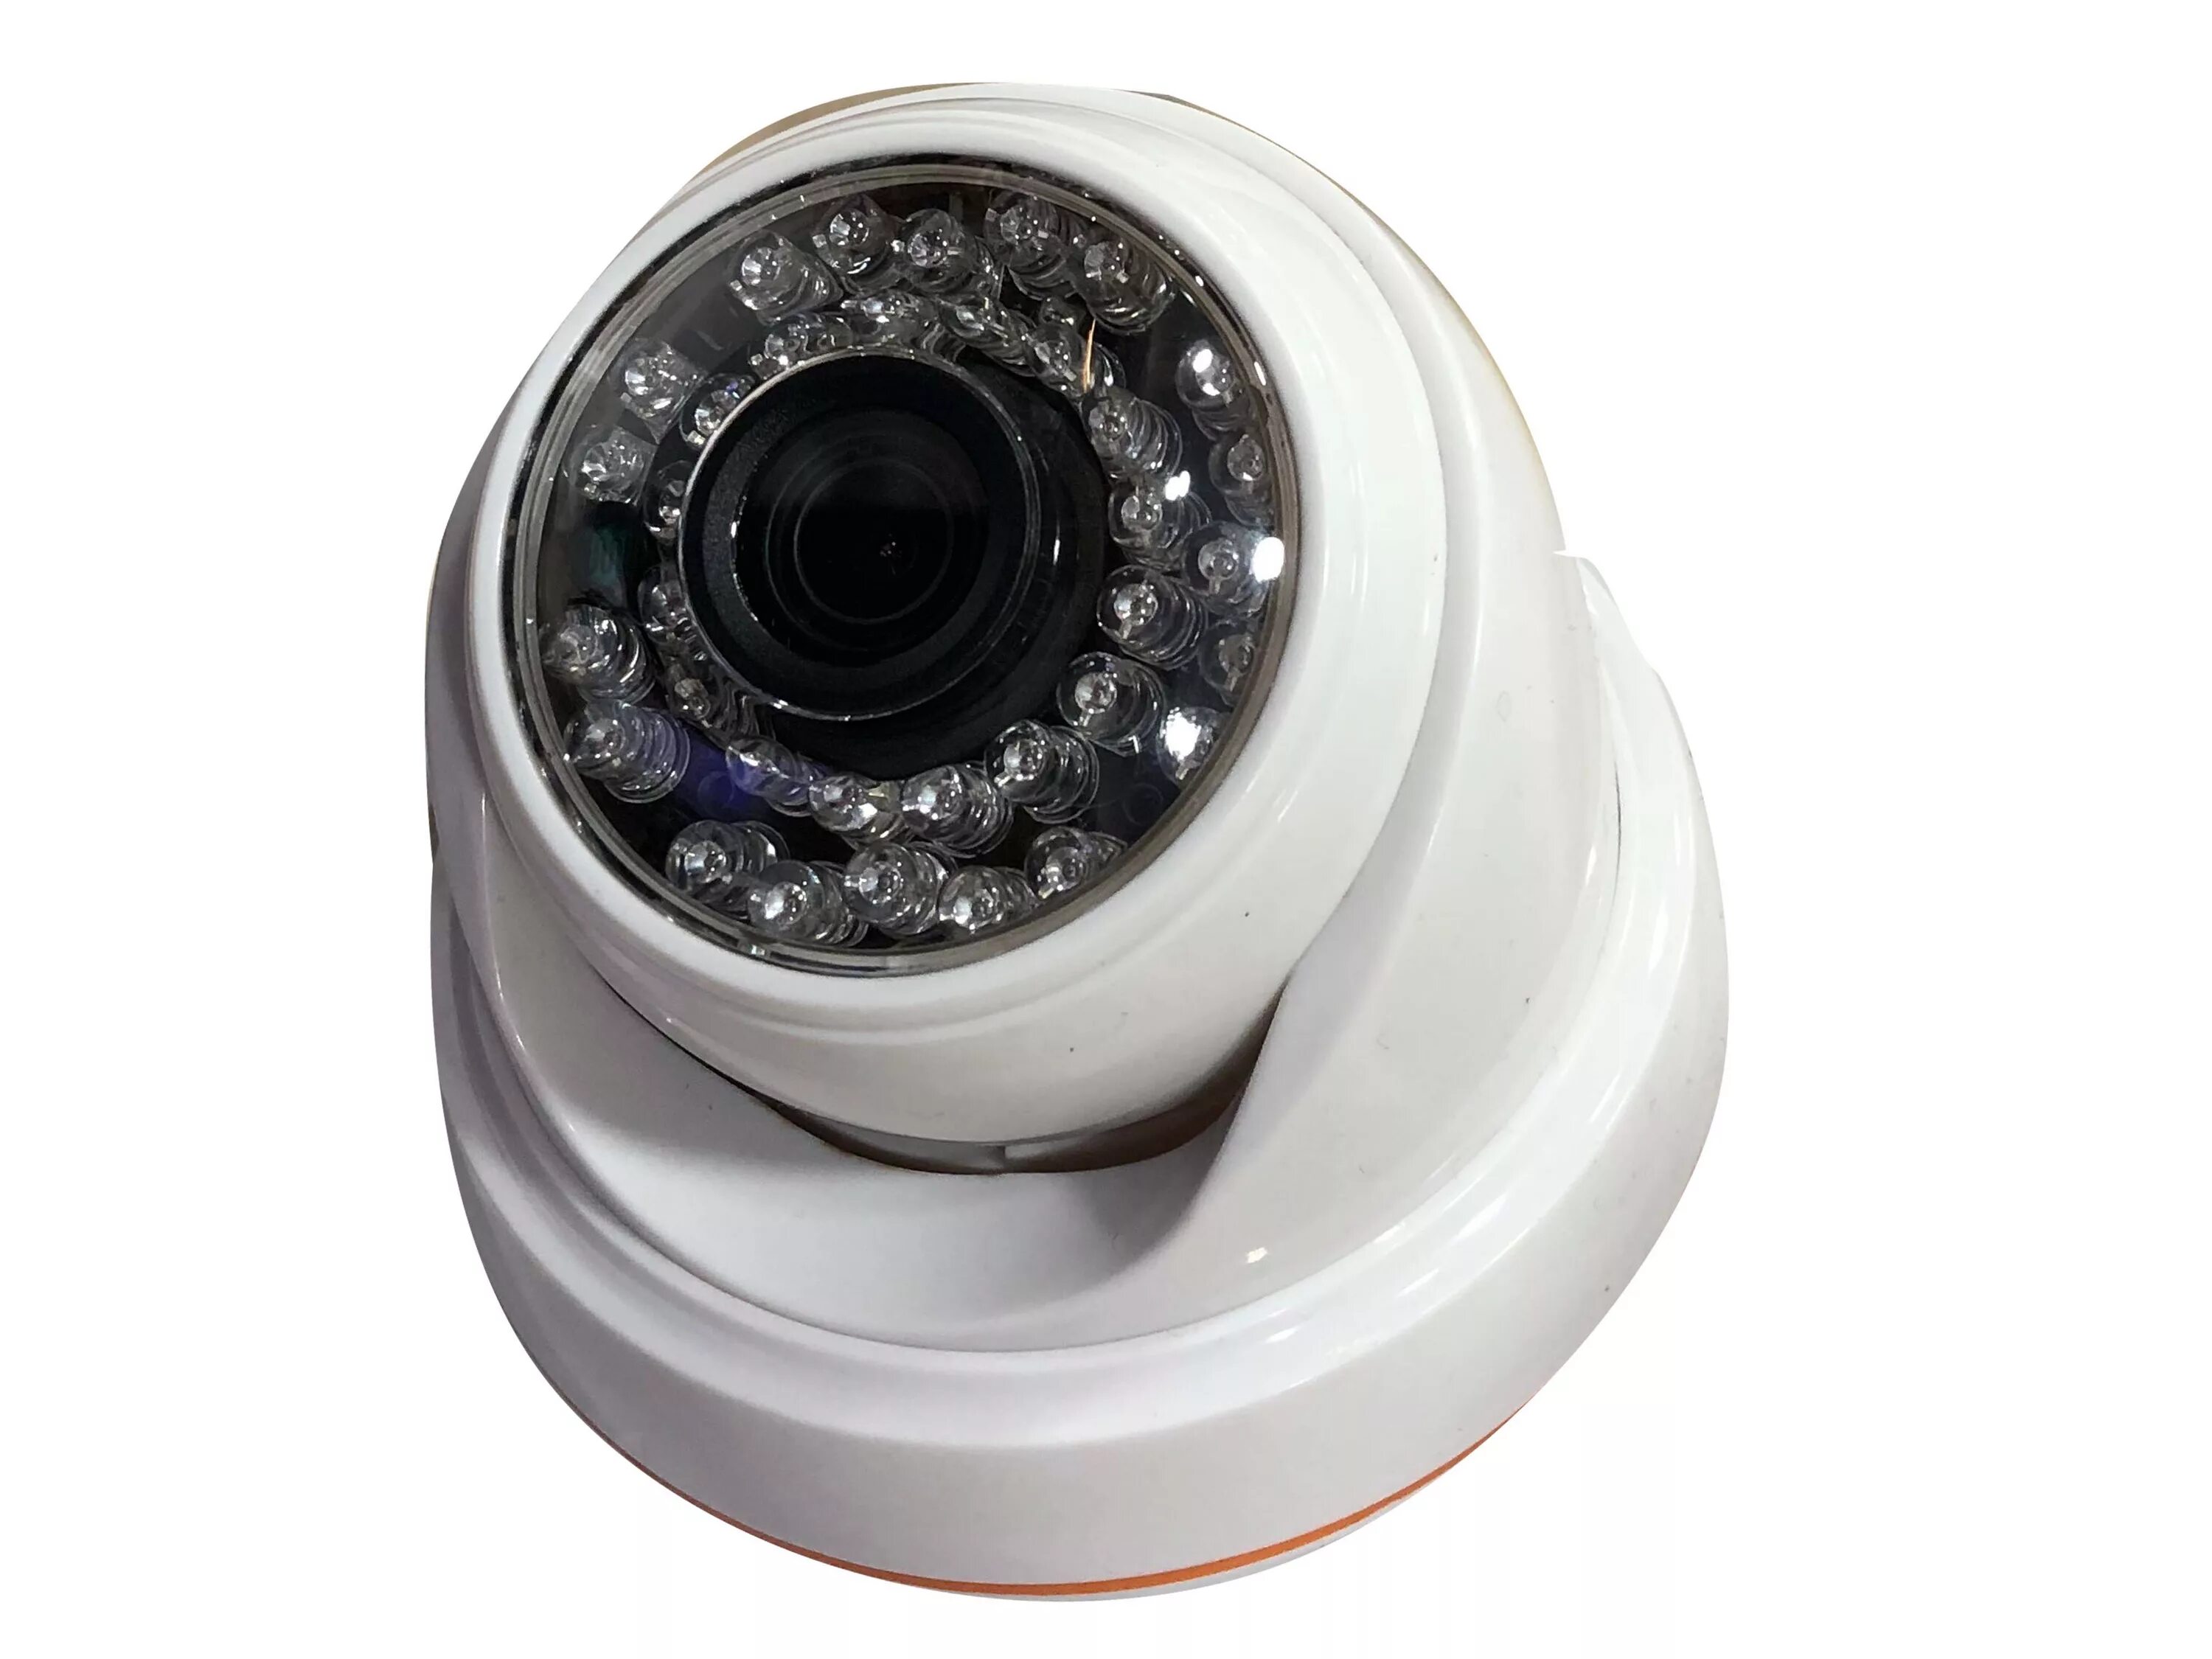 Wildberries купить камеру. Купольная камера видеонаблюдения HIWATCH. Камера zjuxin 5mp AHD камера с Sony датчик. Ts4001 видеокамера. AHD-D1.0 купольная AHD камера, 720p, f=3.6мм.